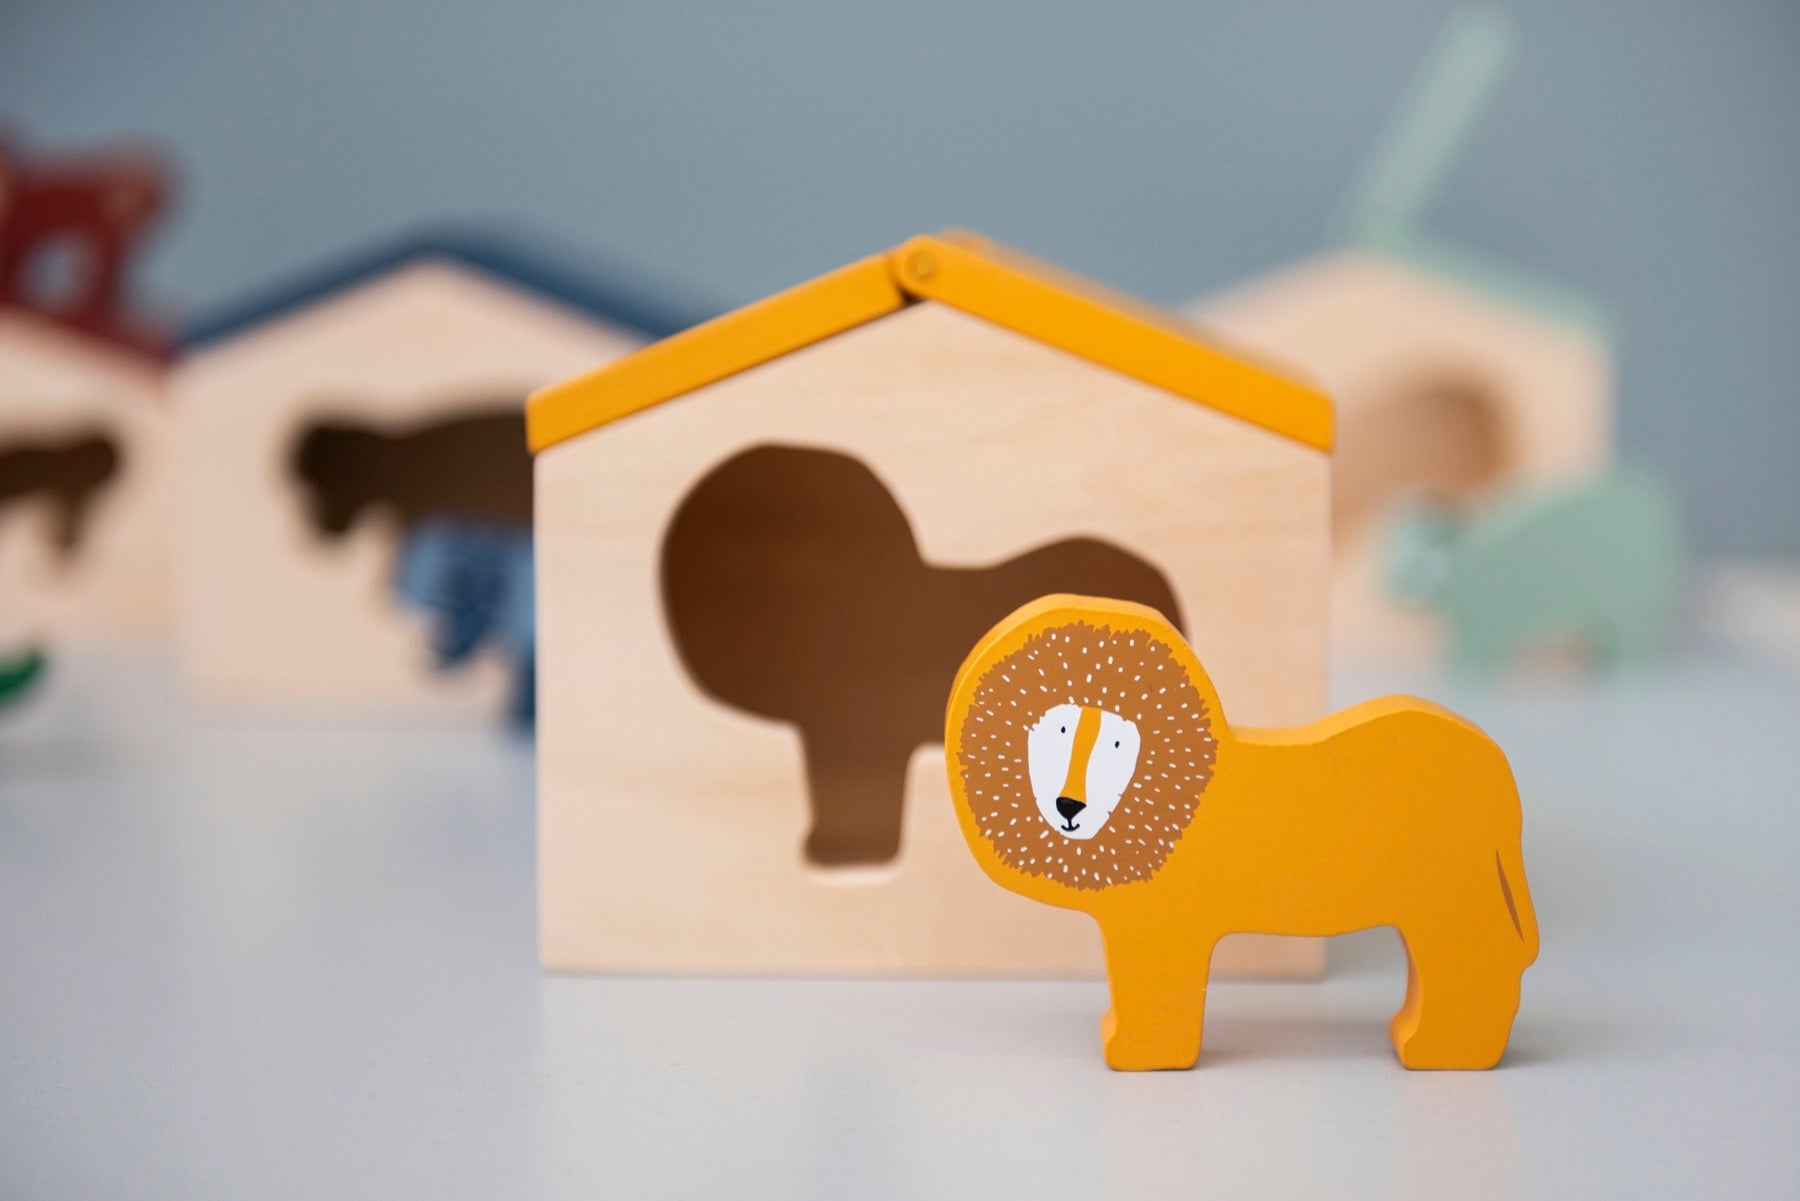 Trixie Das zauberhafte "Holzhaus - Mr. Lion" mit tierischen Freunden und geometrischen Klötzen! 🦁✨